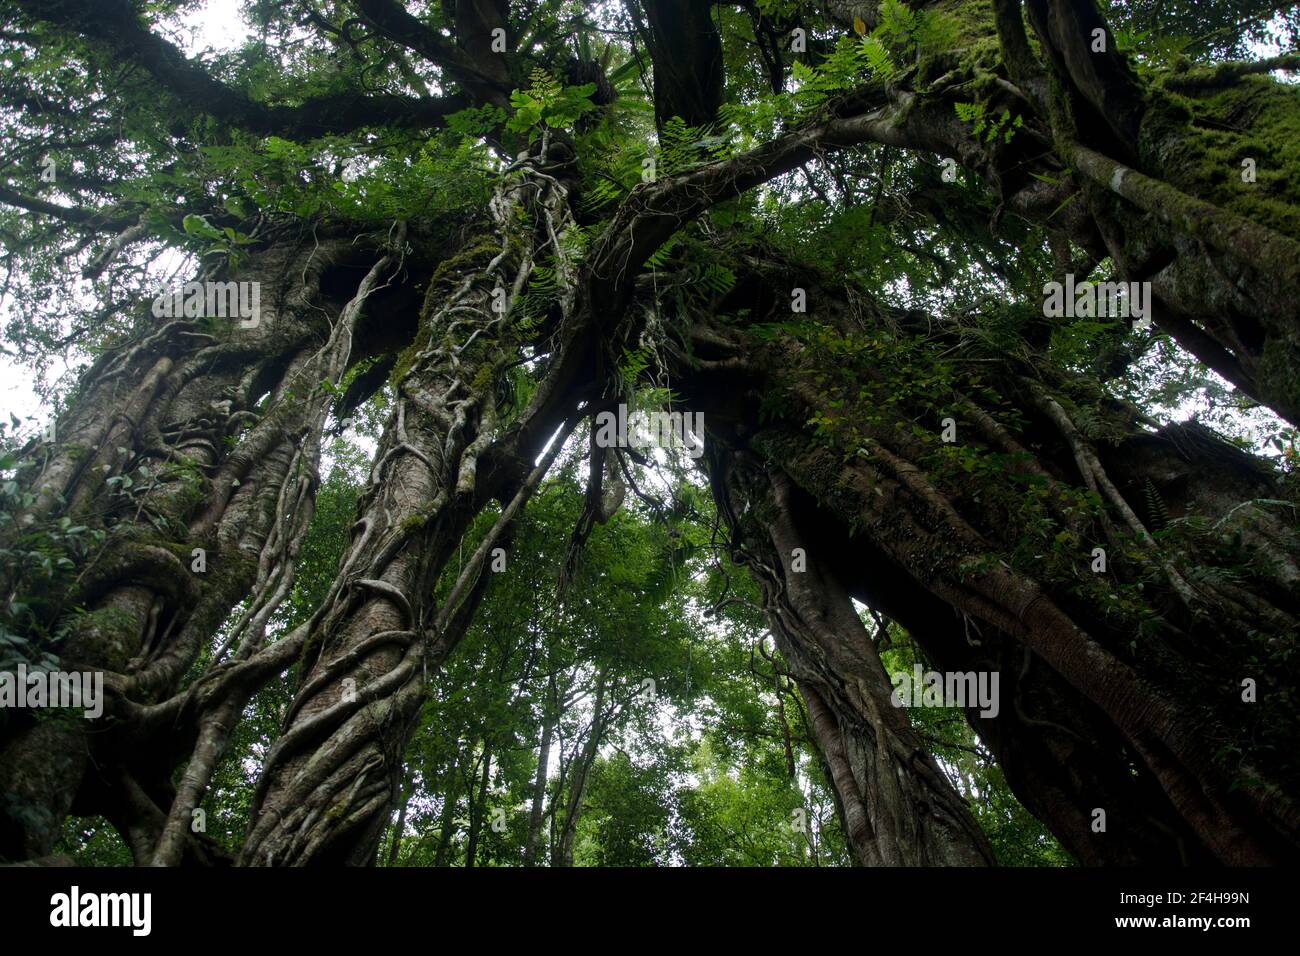 Baumriesen im Toppischen Regenwald rund um den Mount Batukaru im Zentrum Balis Foto Stock